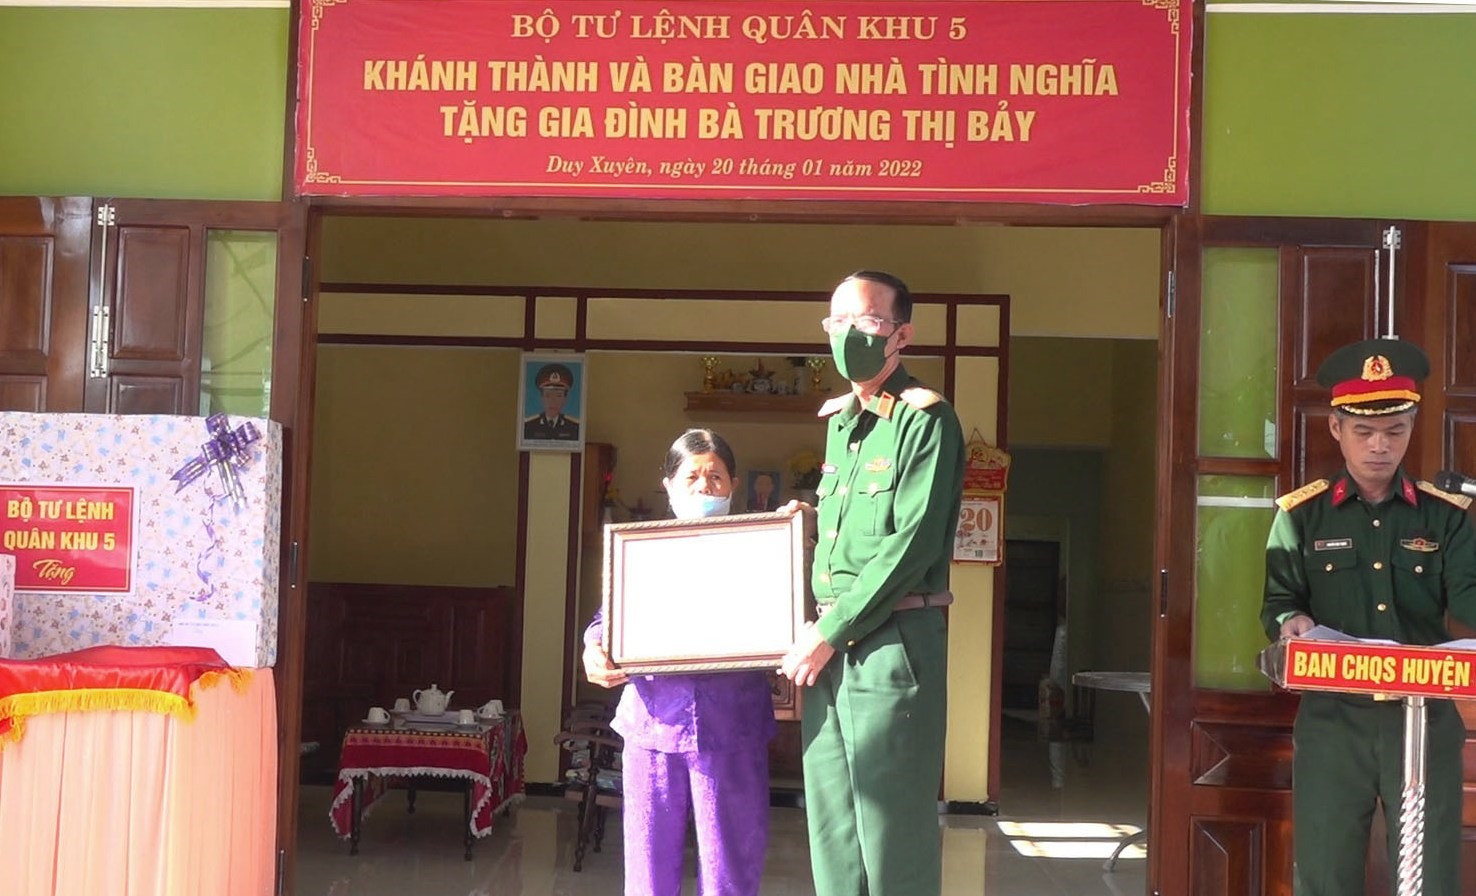 Thiếu tướng Nguyễn Đình Tiến trao quyết định bàn giao nhà tình nghĩa cho bà Trương Thị Bảy.